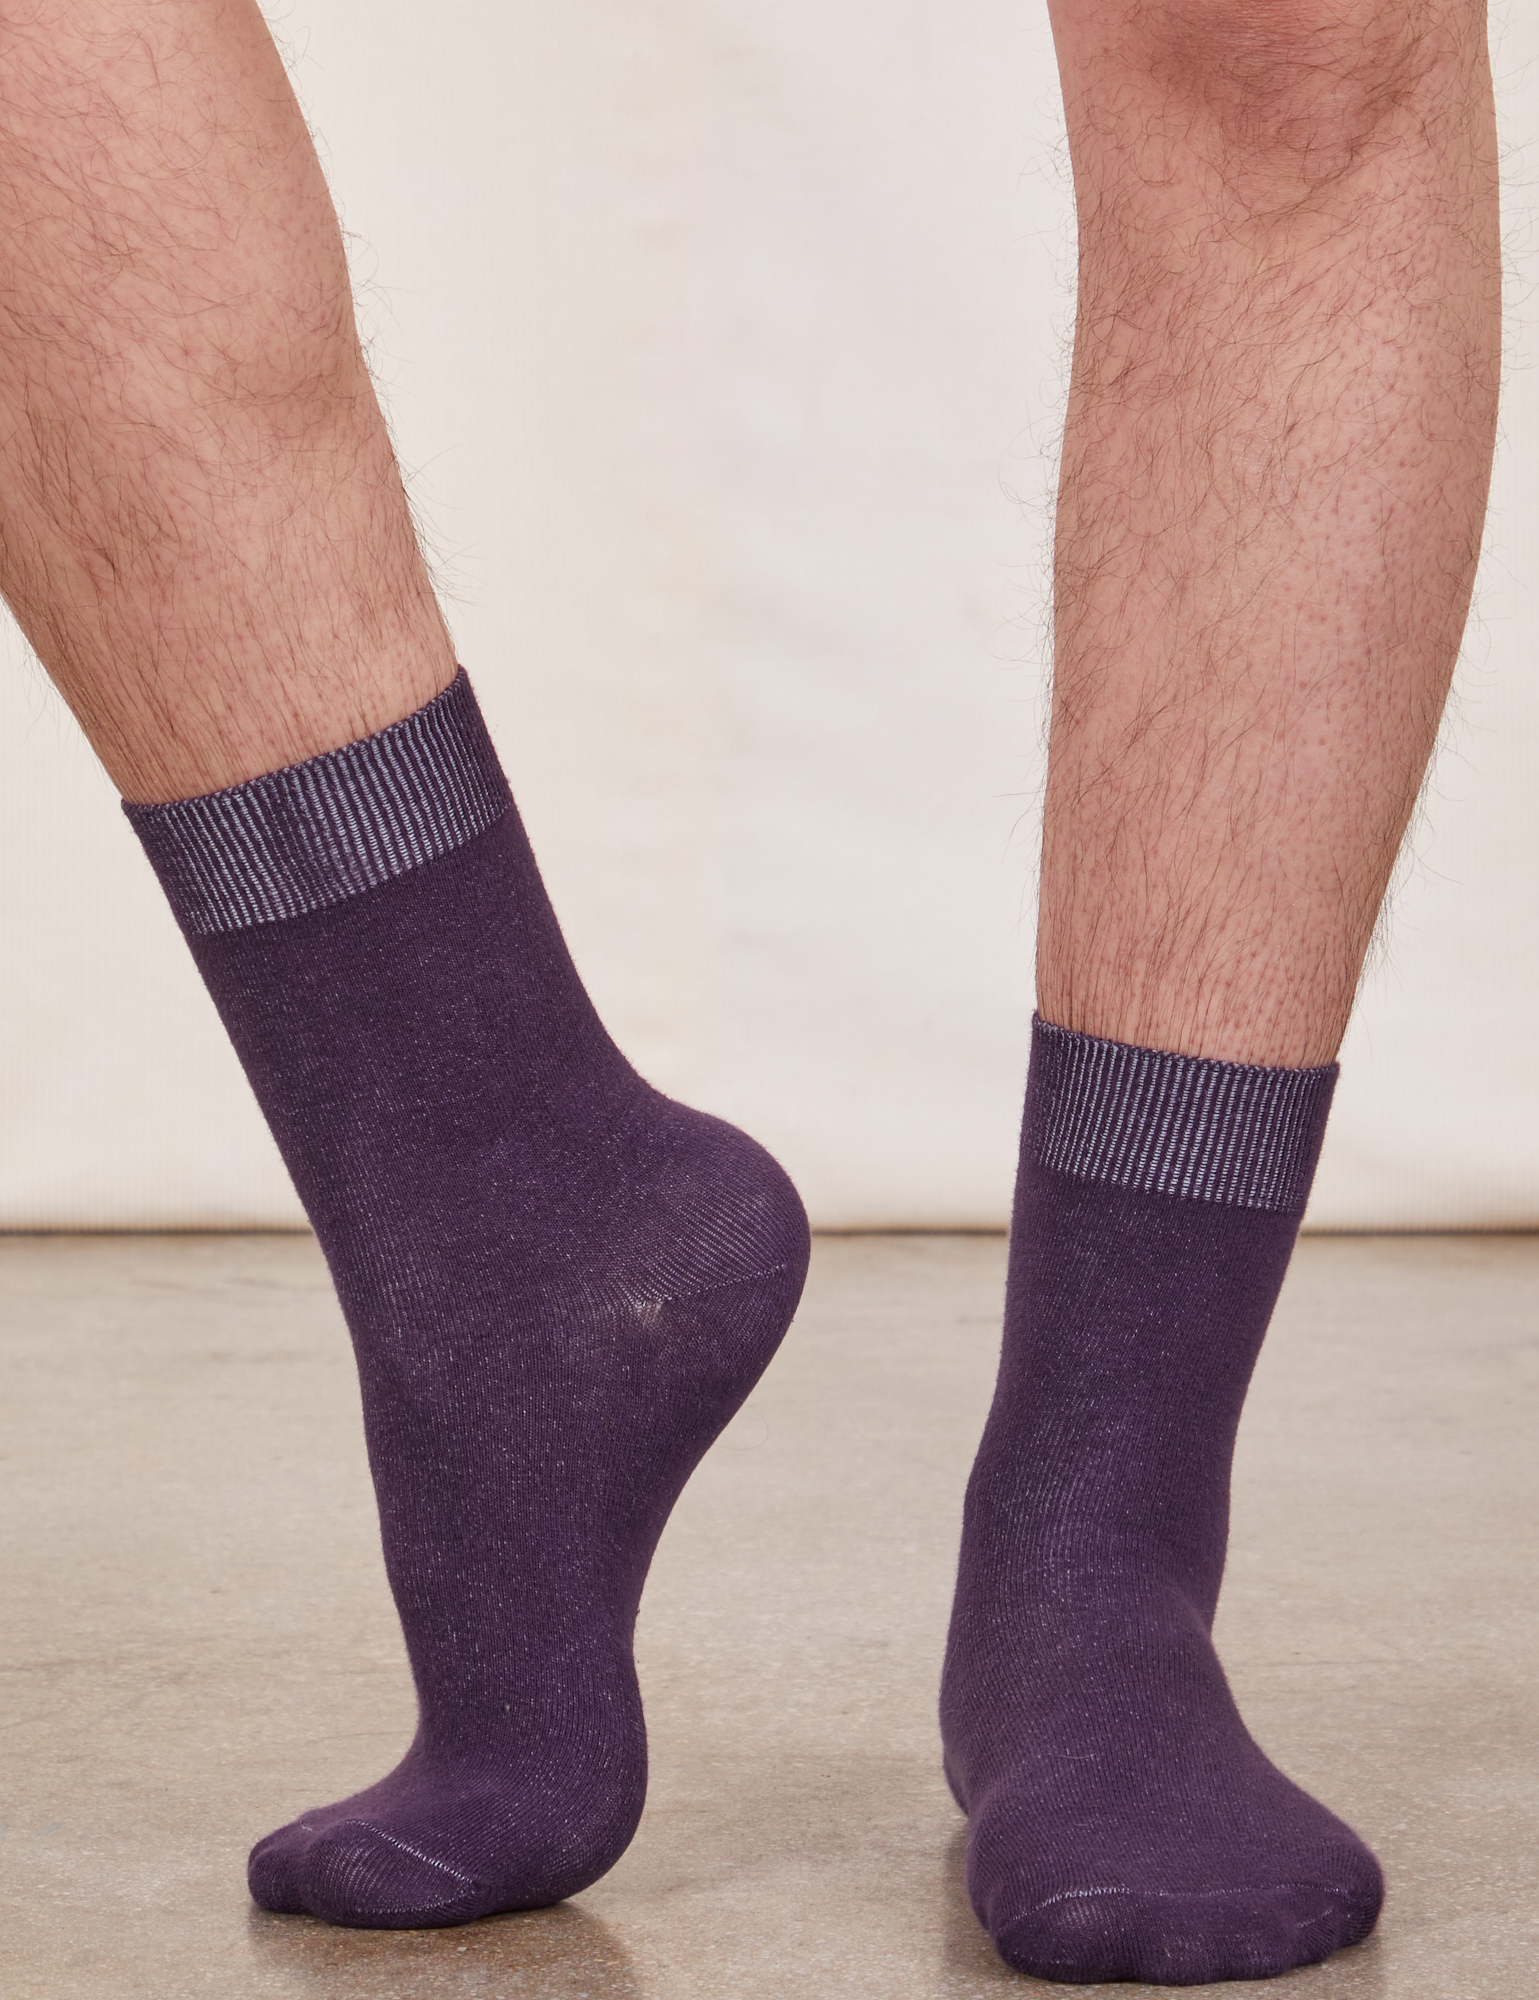 Everyday Sock in Nebula Purple worn by model